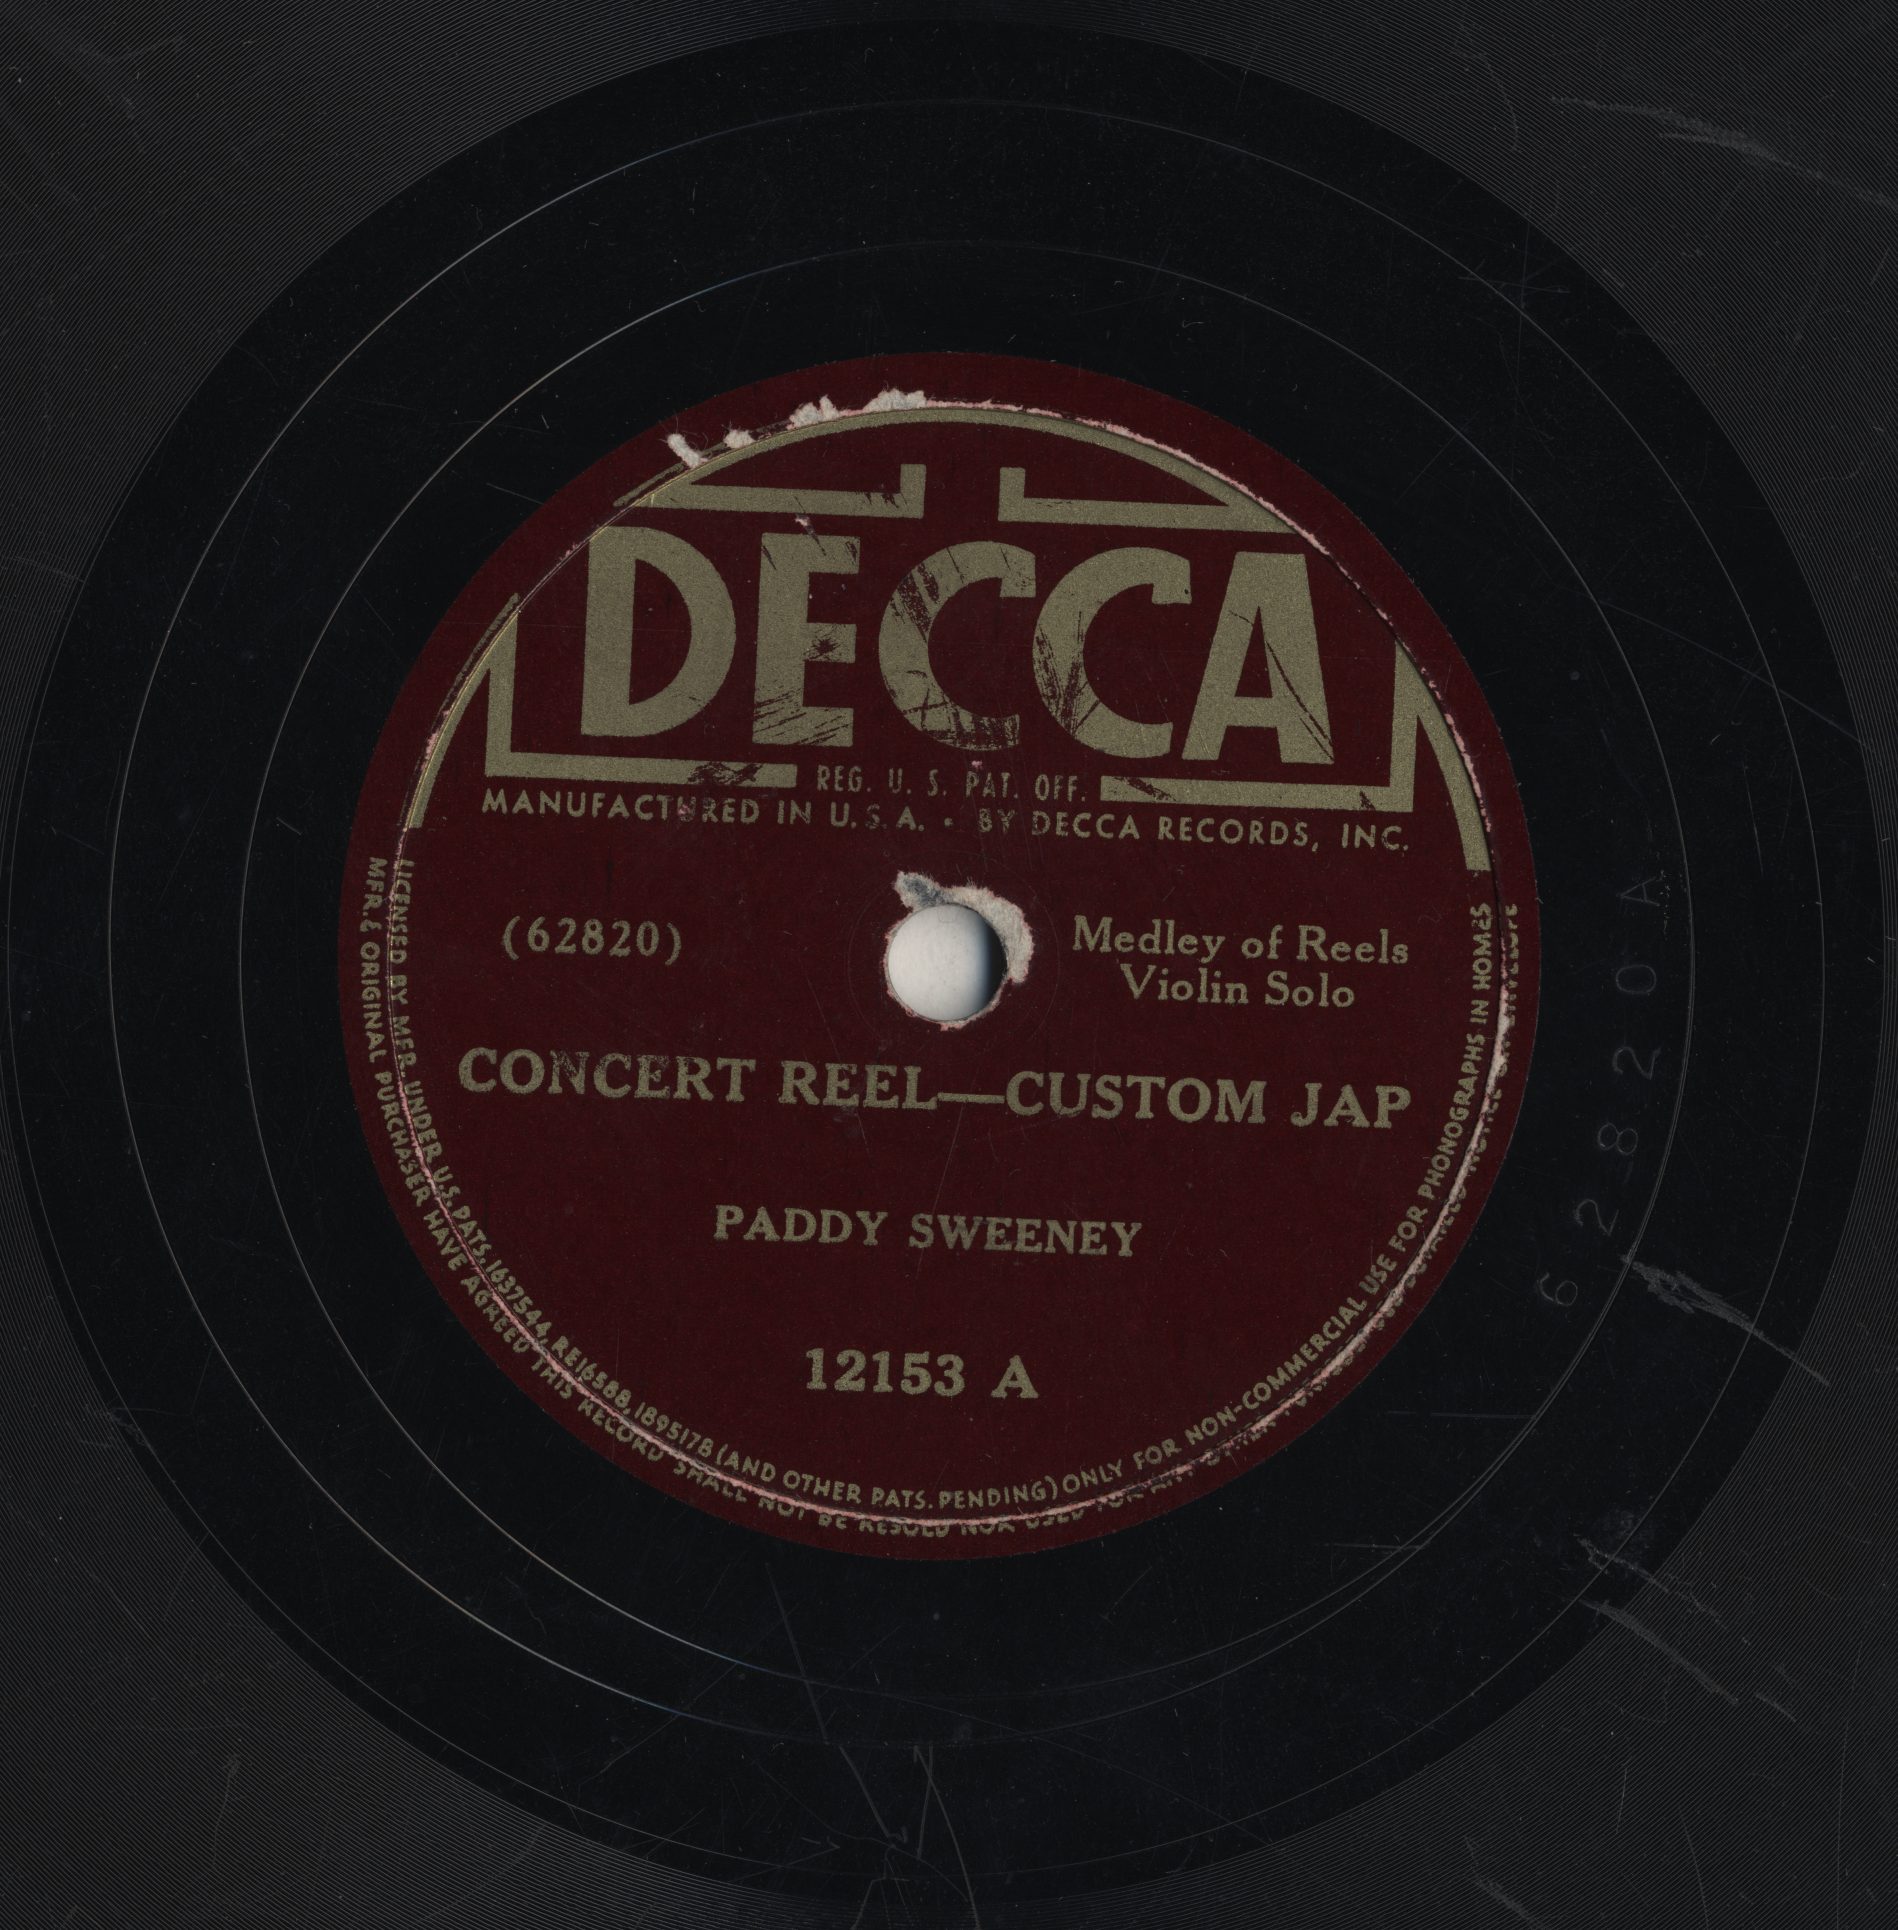 Paddy Sweeney: Concert Reel/Custom Jap (reels)